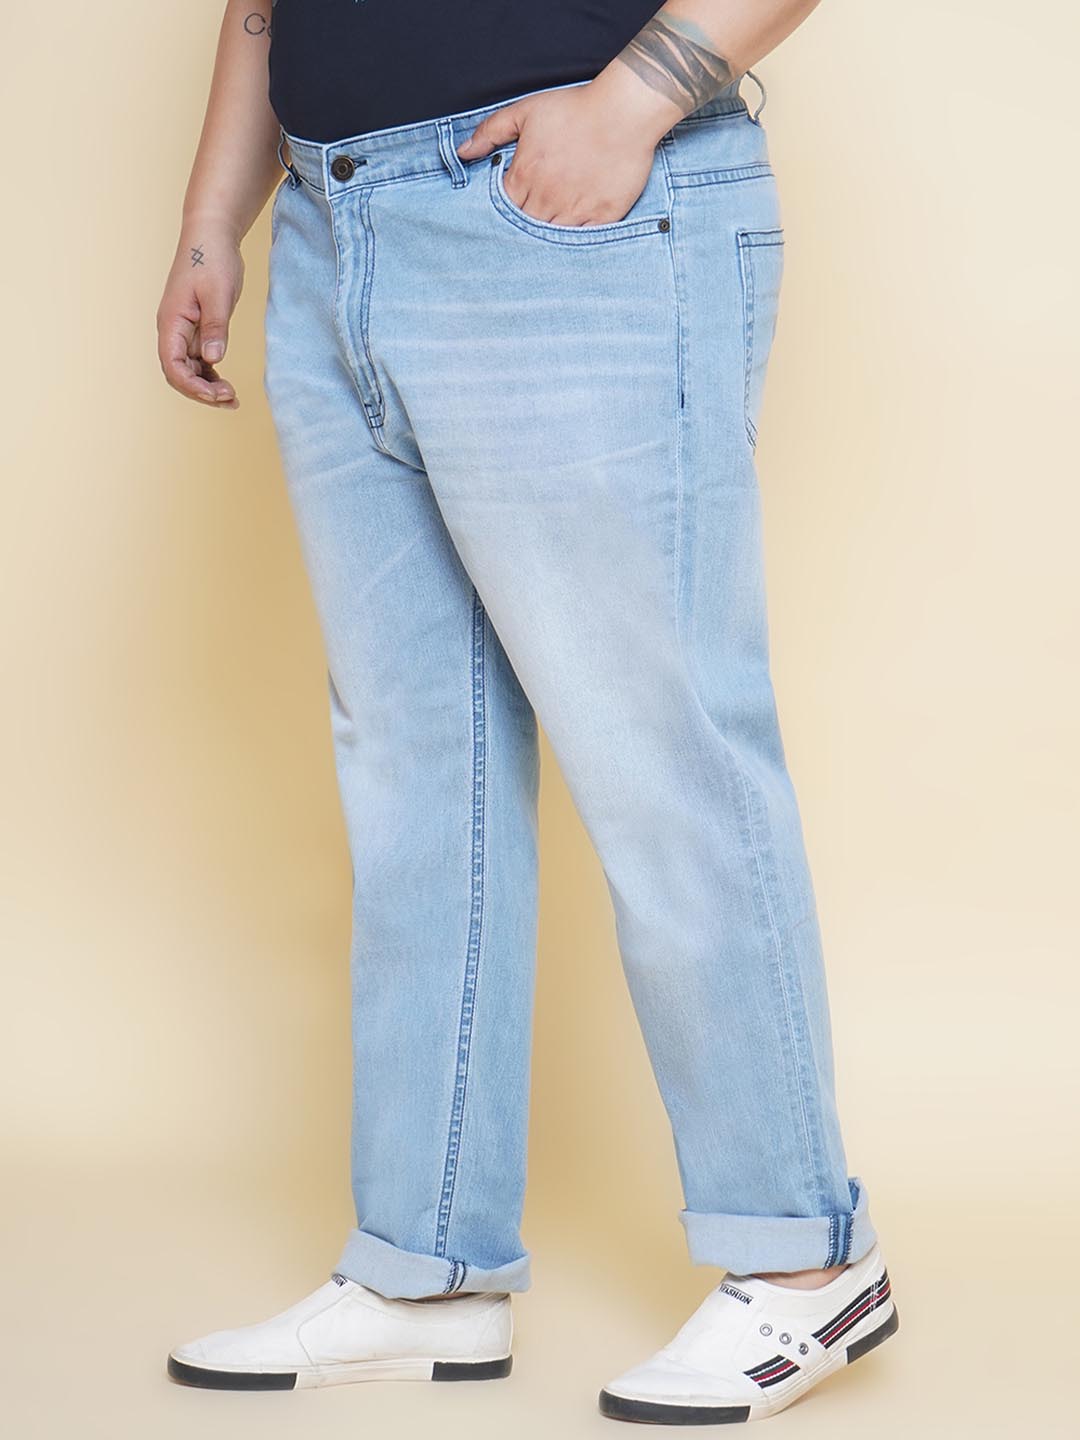 bottomwear/jeans/JPJ12361/jpj12361-4.jpg